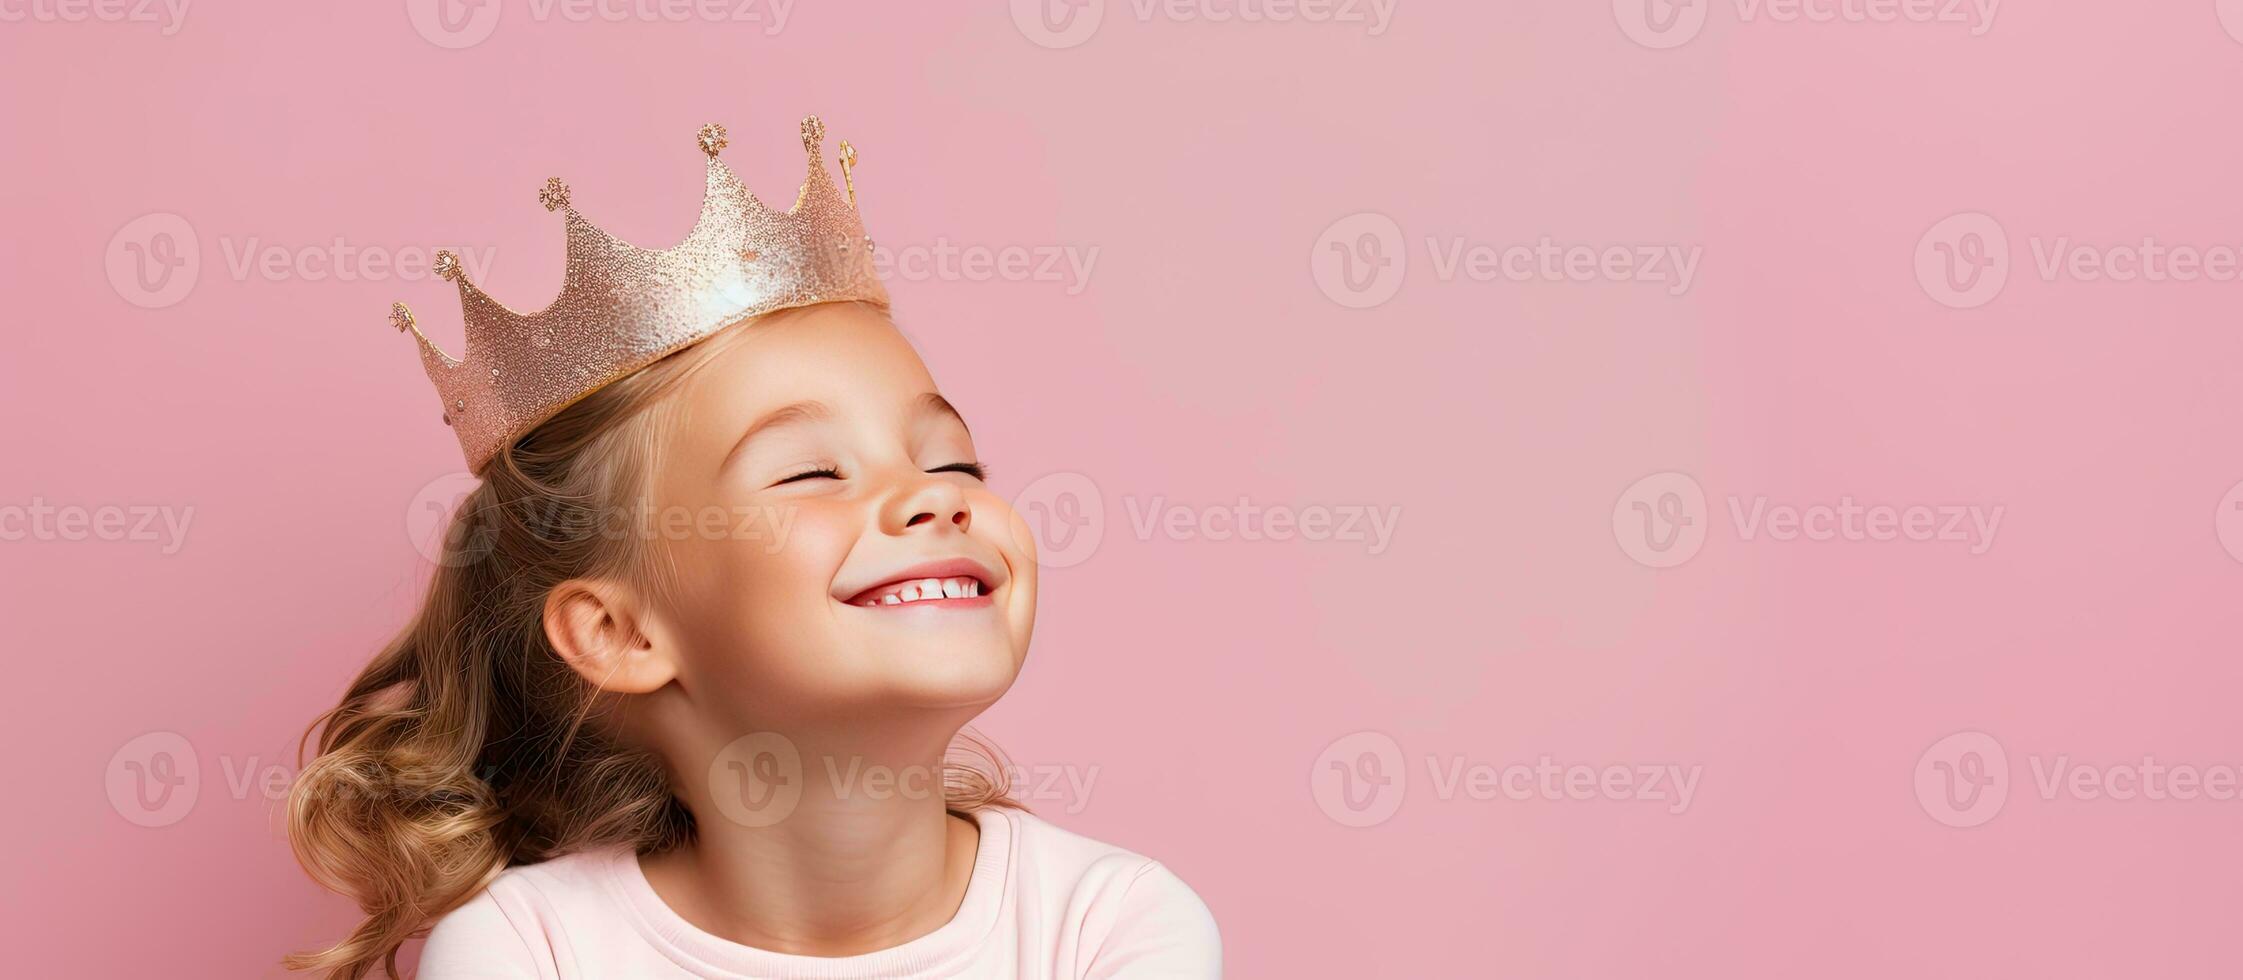 gelukkig jong meisje vervelend speelgoed- kroon poseren over- roze achtergrond op zoek terzijde met dromerig uitdrukking foto